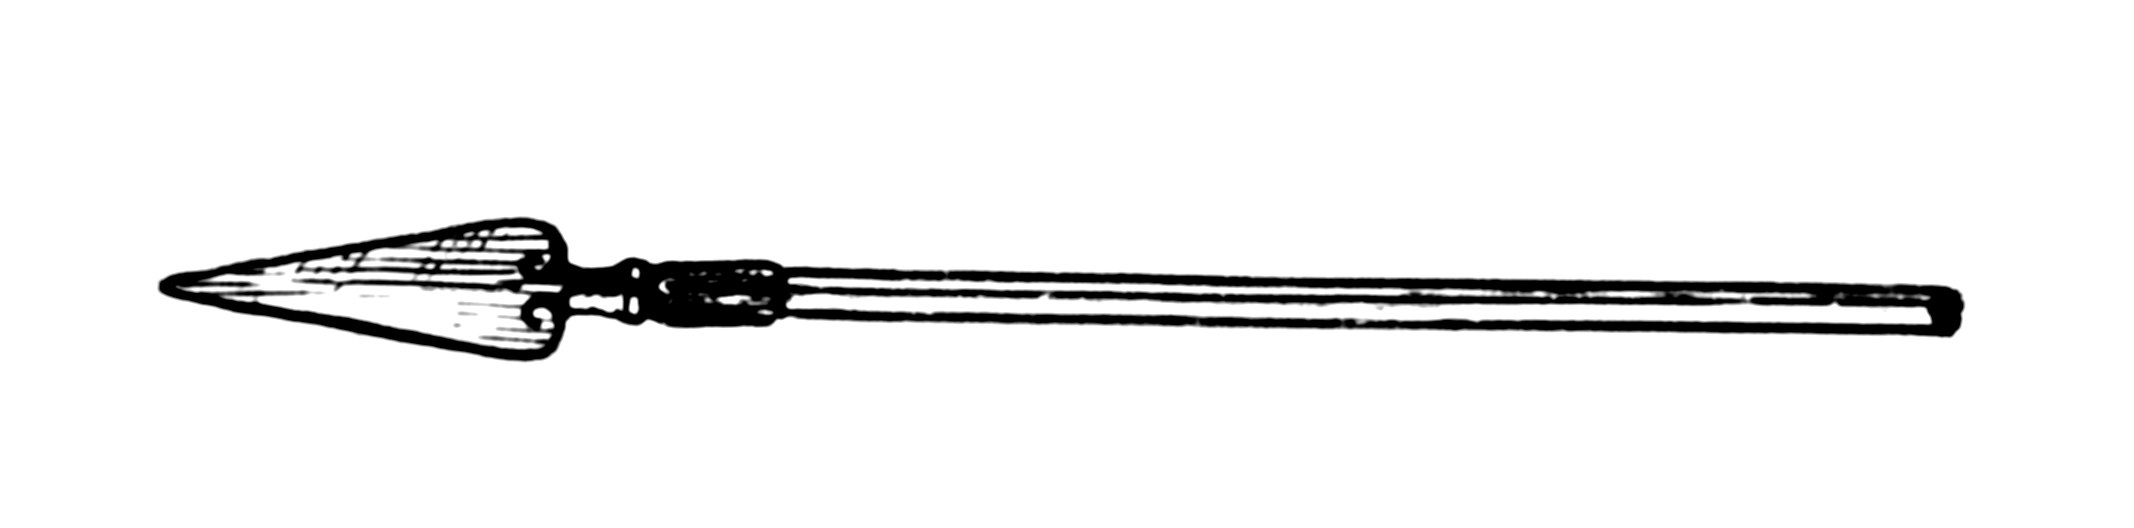 Black Spear Logo - Spears